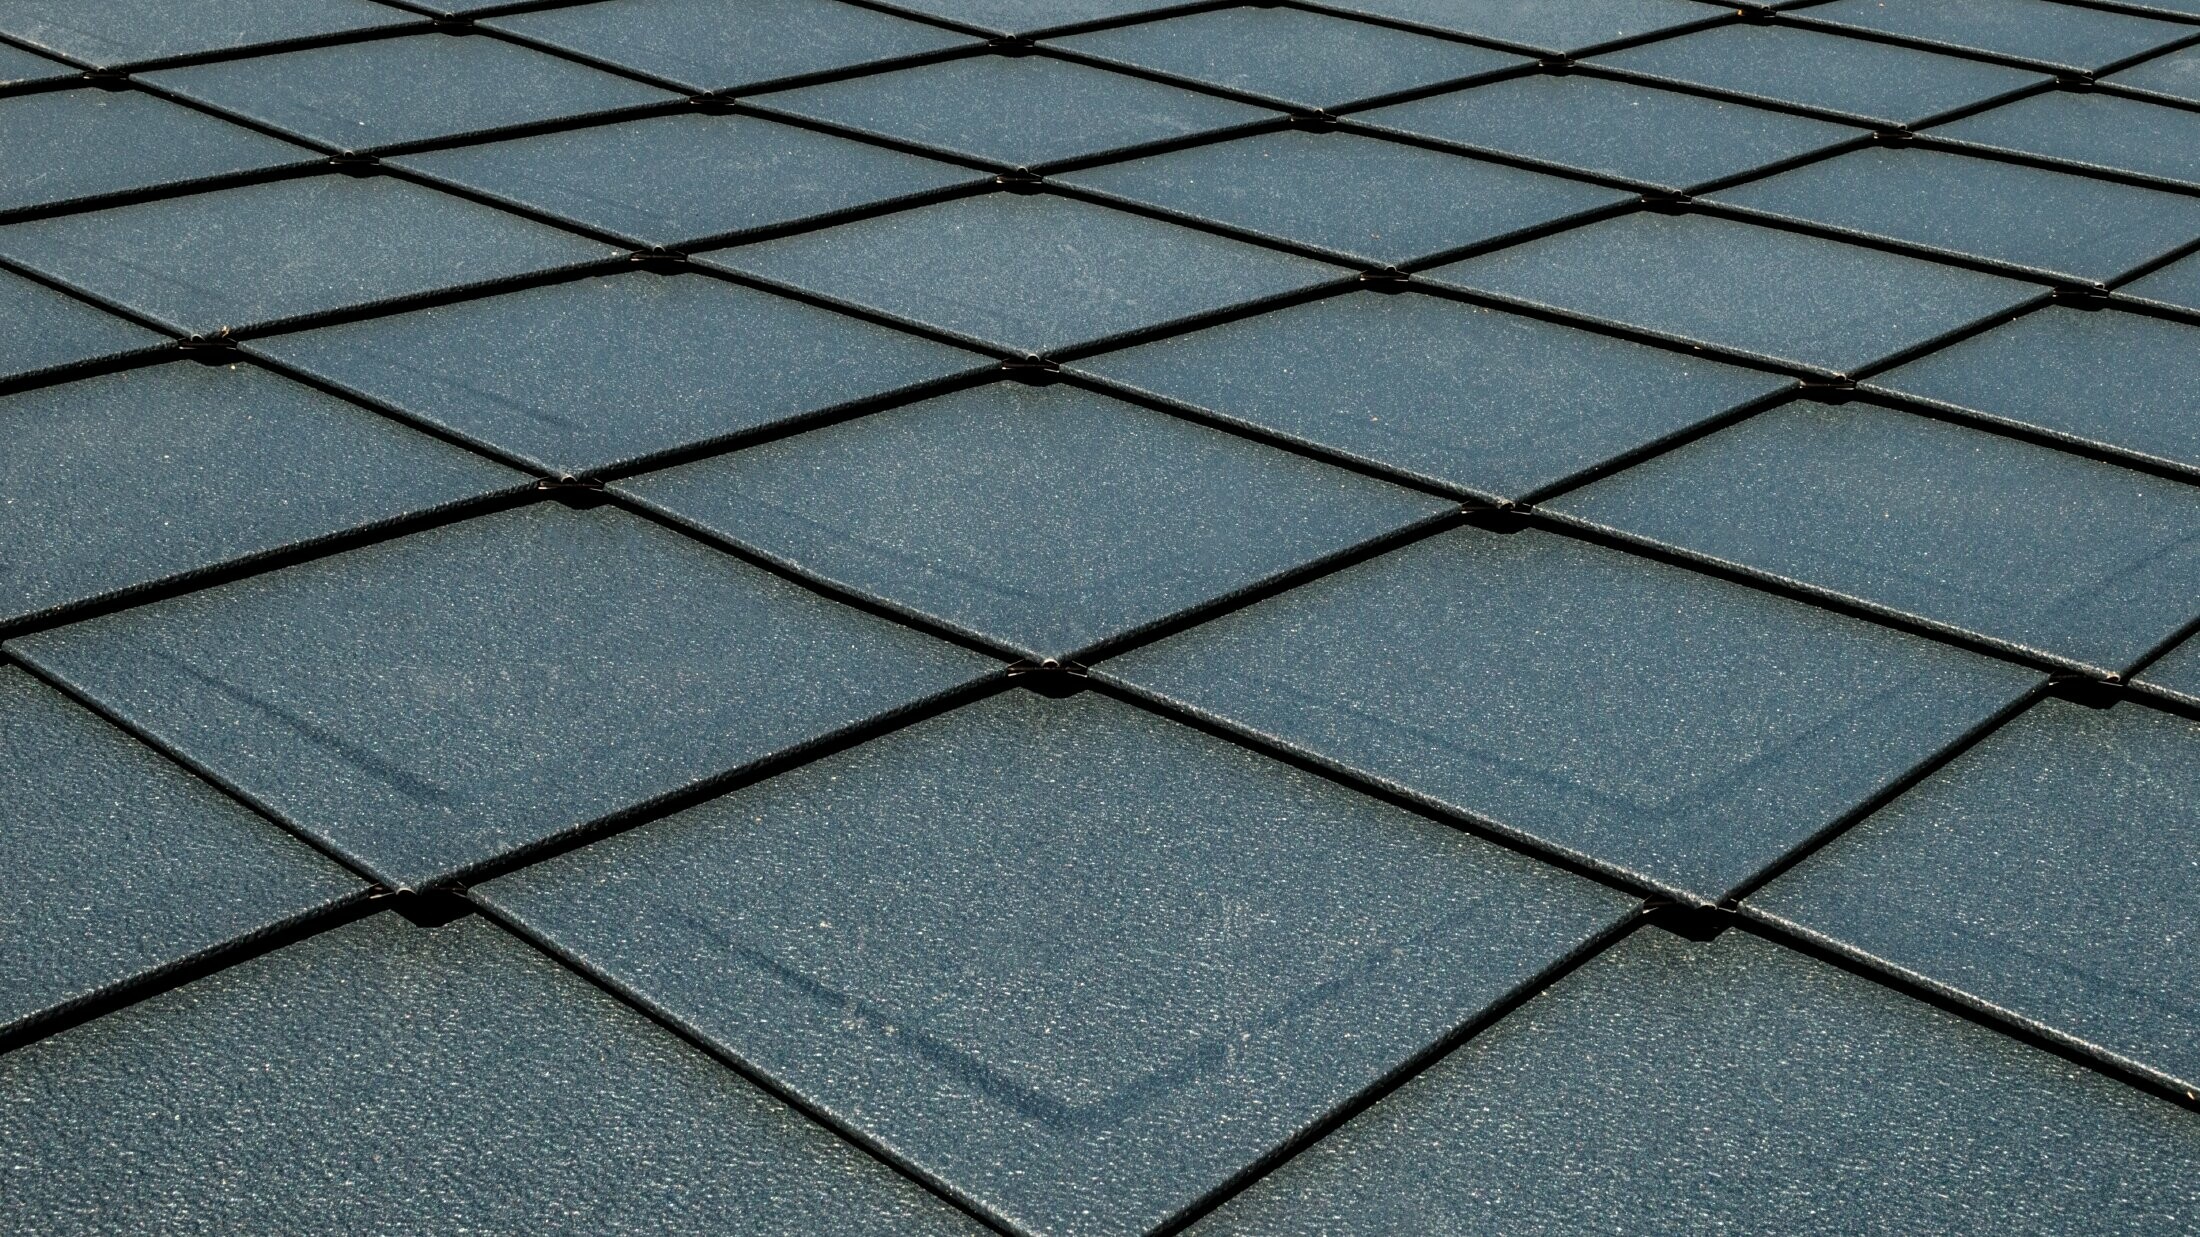 Dachówka romb 29 × 29 PREFA w kolorze antracytowym P.10 z przetłoczeniem, dach imitujący „łuskę”